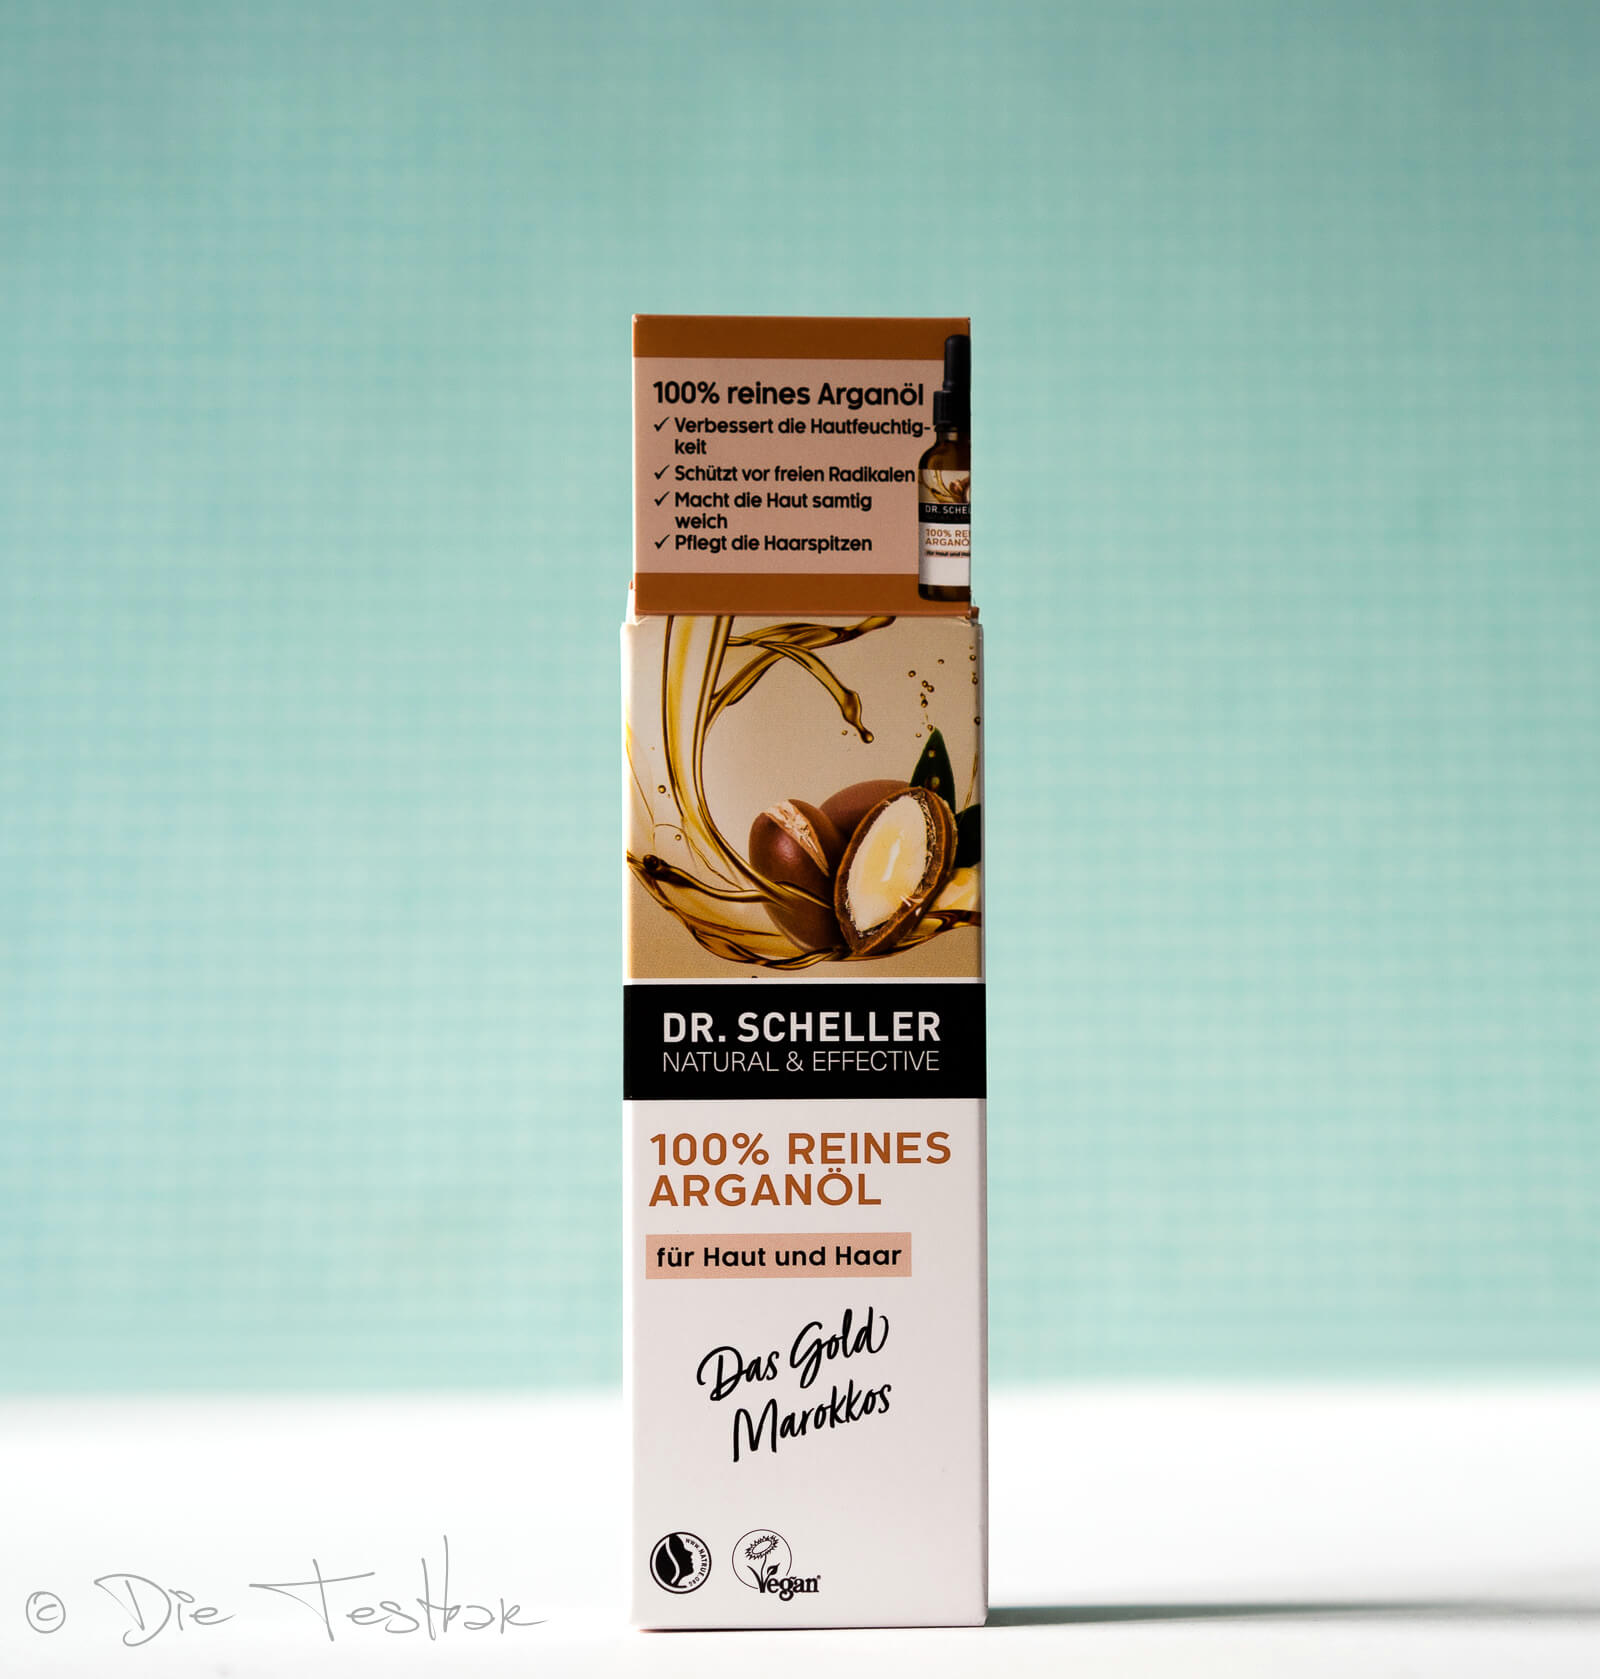 Beautygeheimnis - Reines Bio Arganöl von Dr. Scheller - Das flüssige Gold Marokkos für die Haut- und Haarpflege 